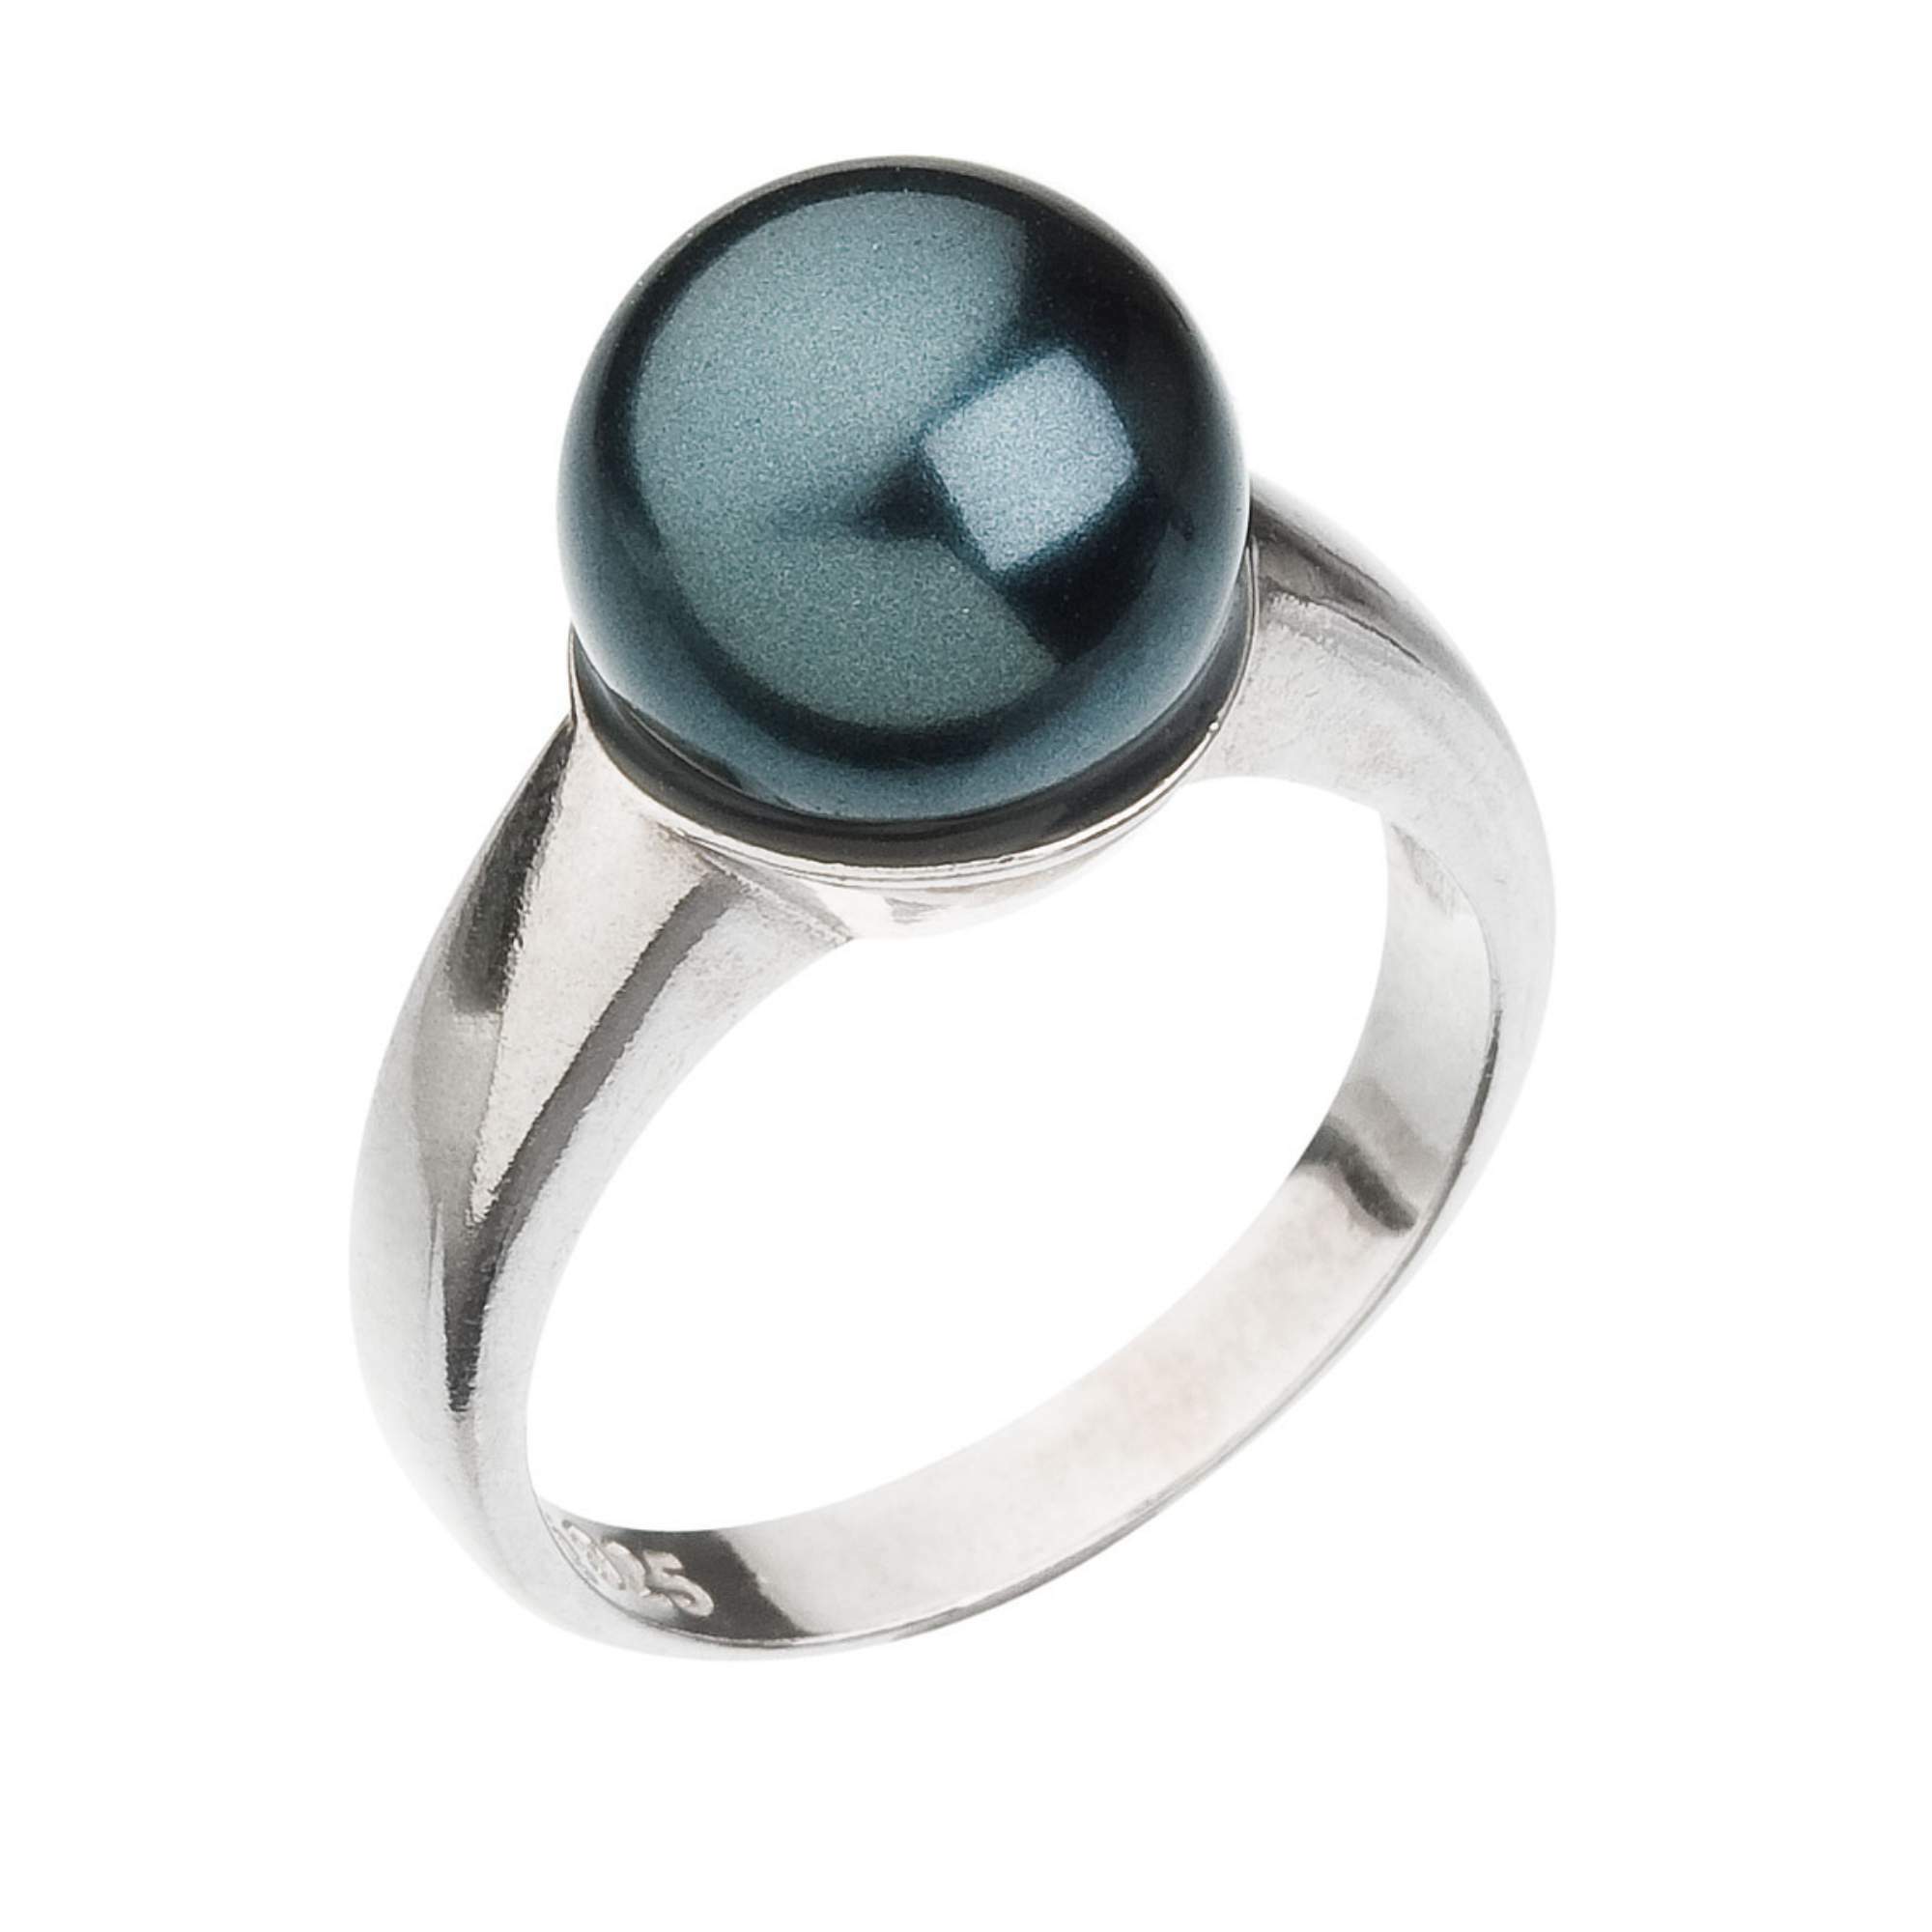 Evolution Group -  Něžný stříbrný prsten s umělou perlou 735022.3 tahiti 52 mm